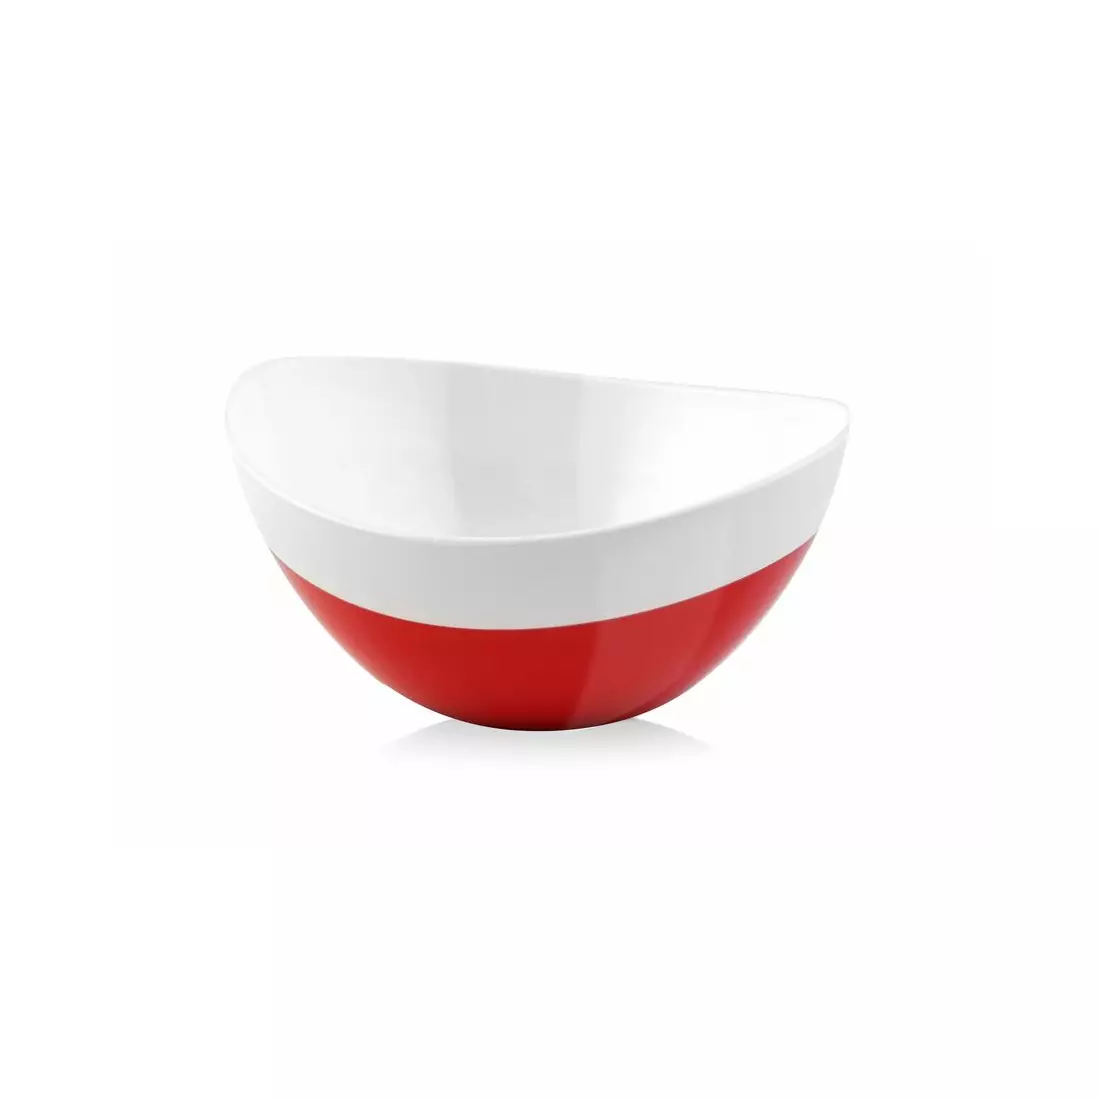 Vialli Design Livio Duo oval bowl, white and red